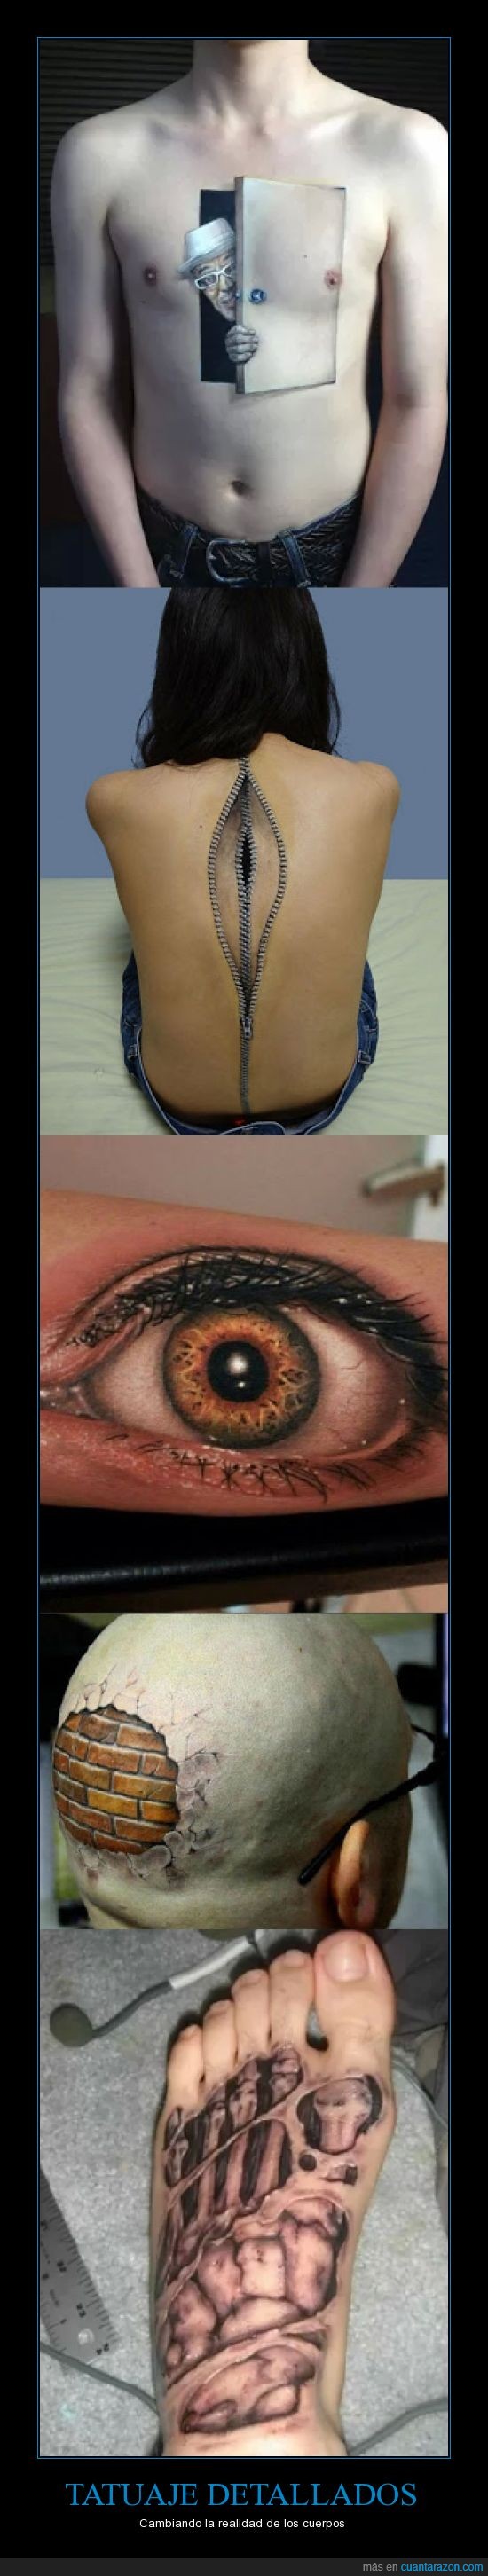 Tatuajes,realistas,cuerpos,3d,realista,ojo,musculo,huedo,pie